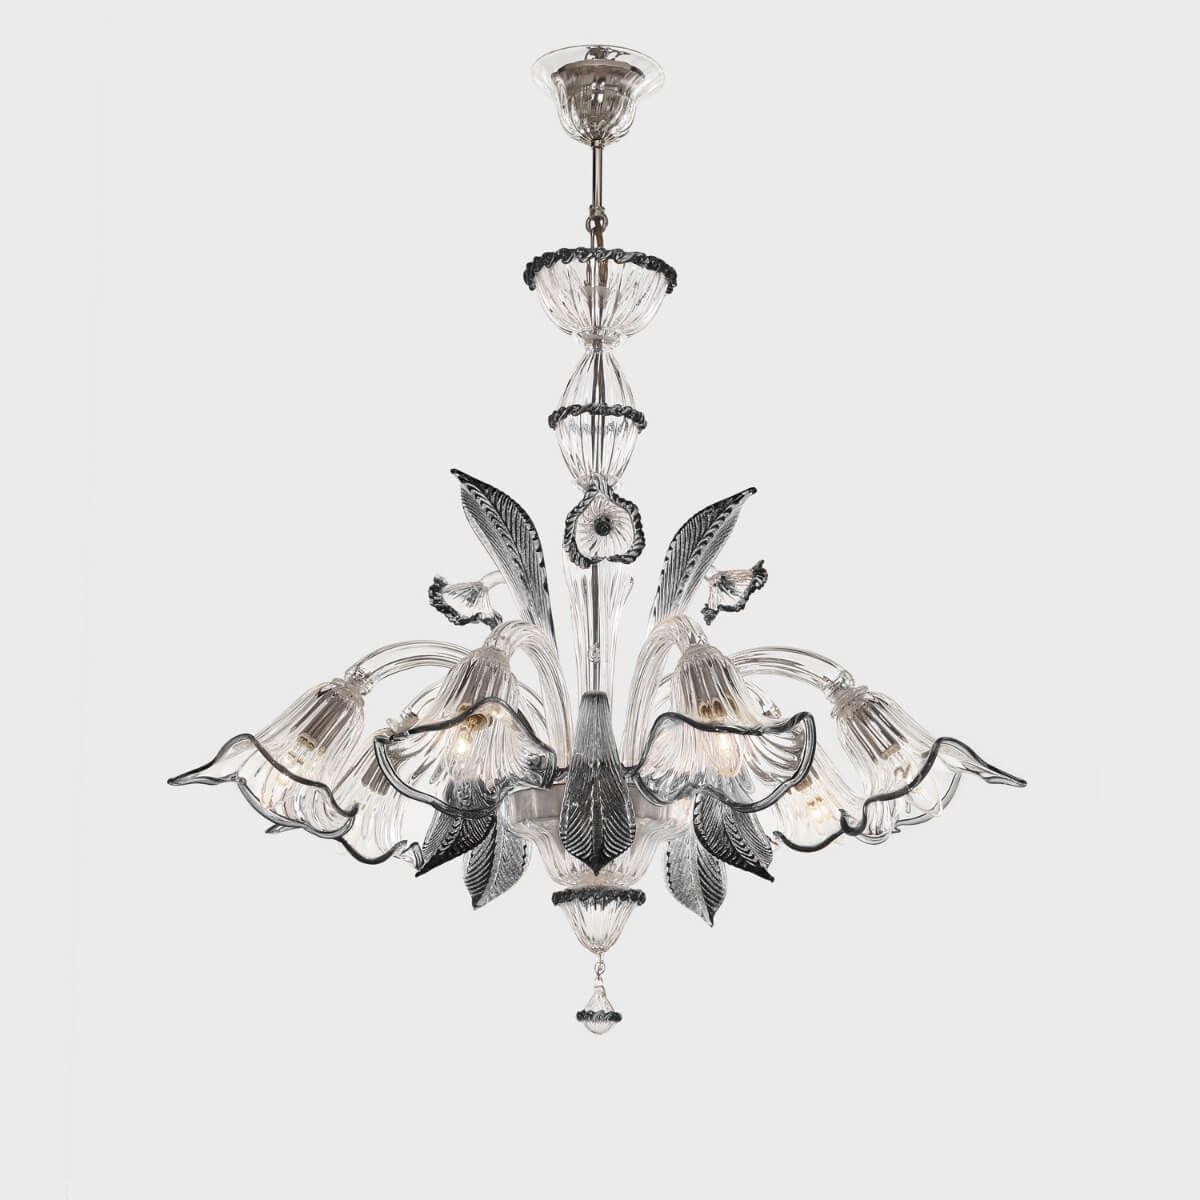 Murano chandelier "Afrodite" 